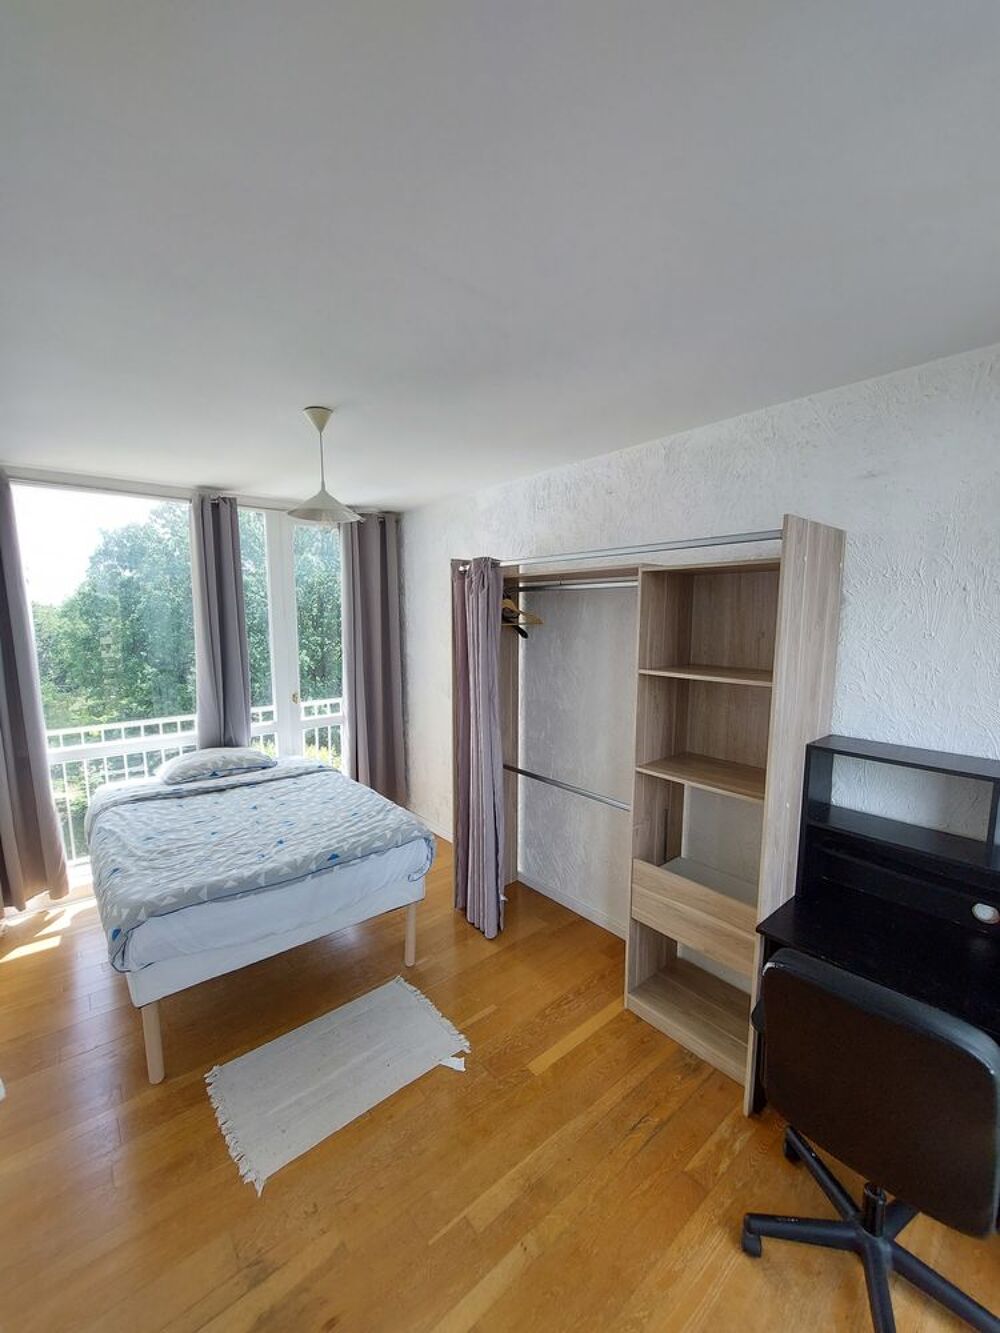 Location Appartement Cergy (95) chambre colocation meubl (30 min La Dfense RER Cergy